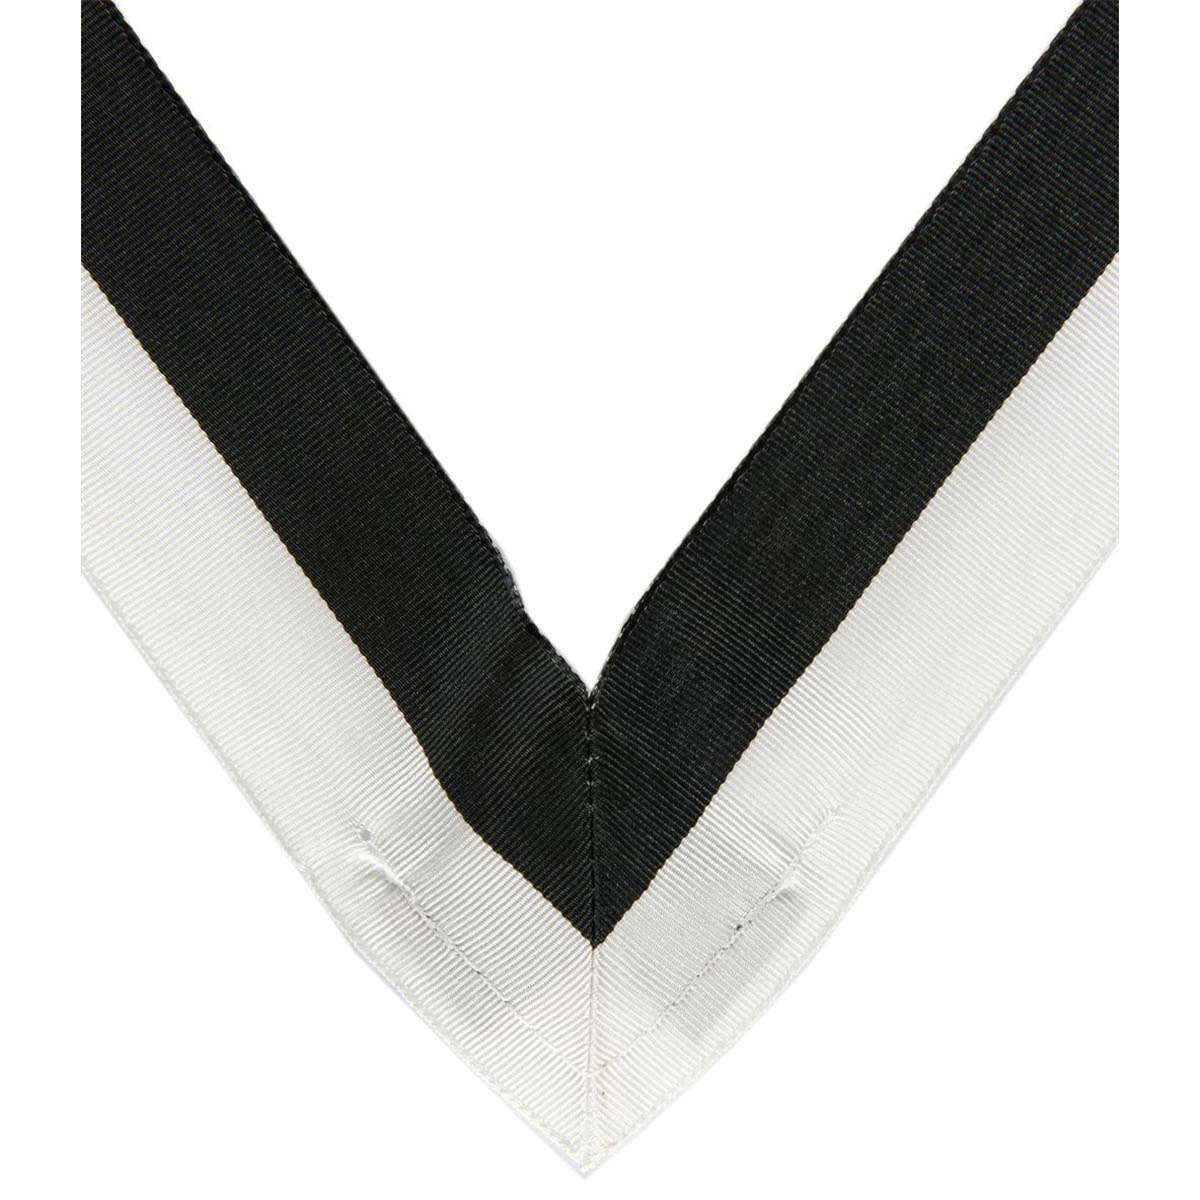 Chancellor Replacement Ribbon - Black/White